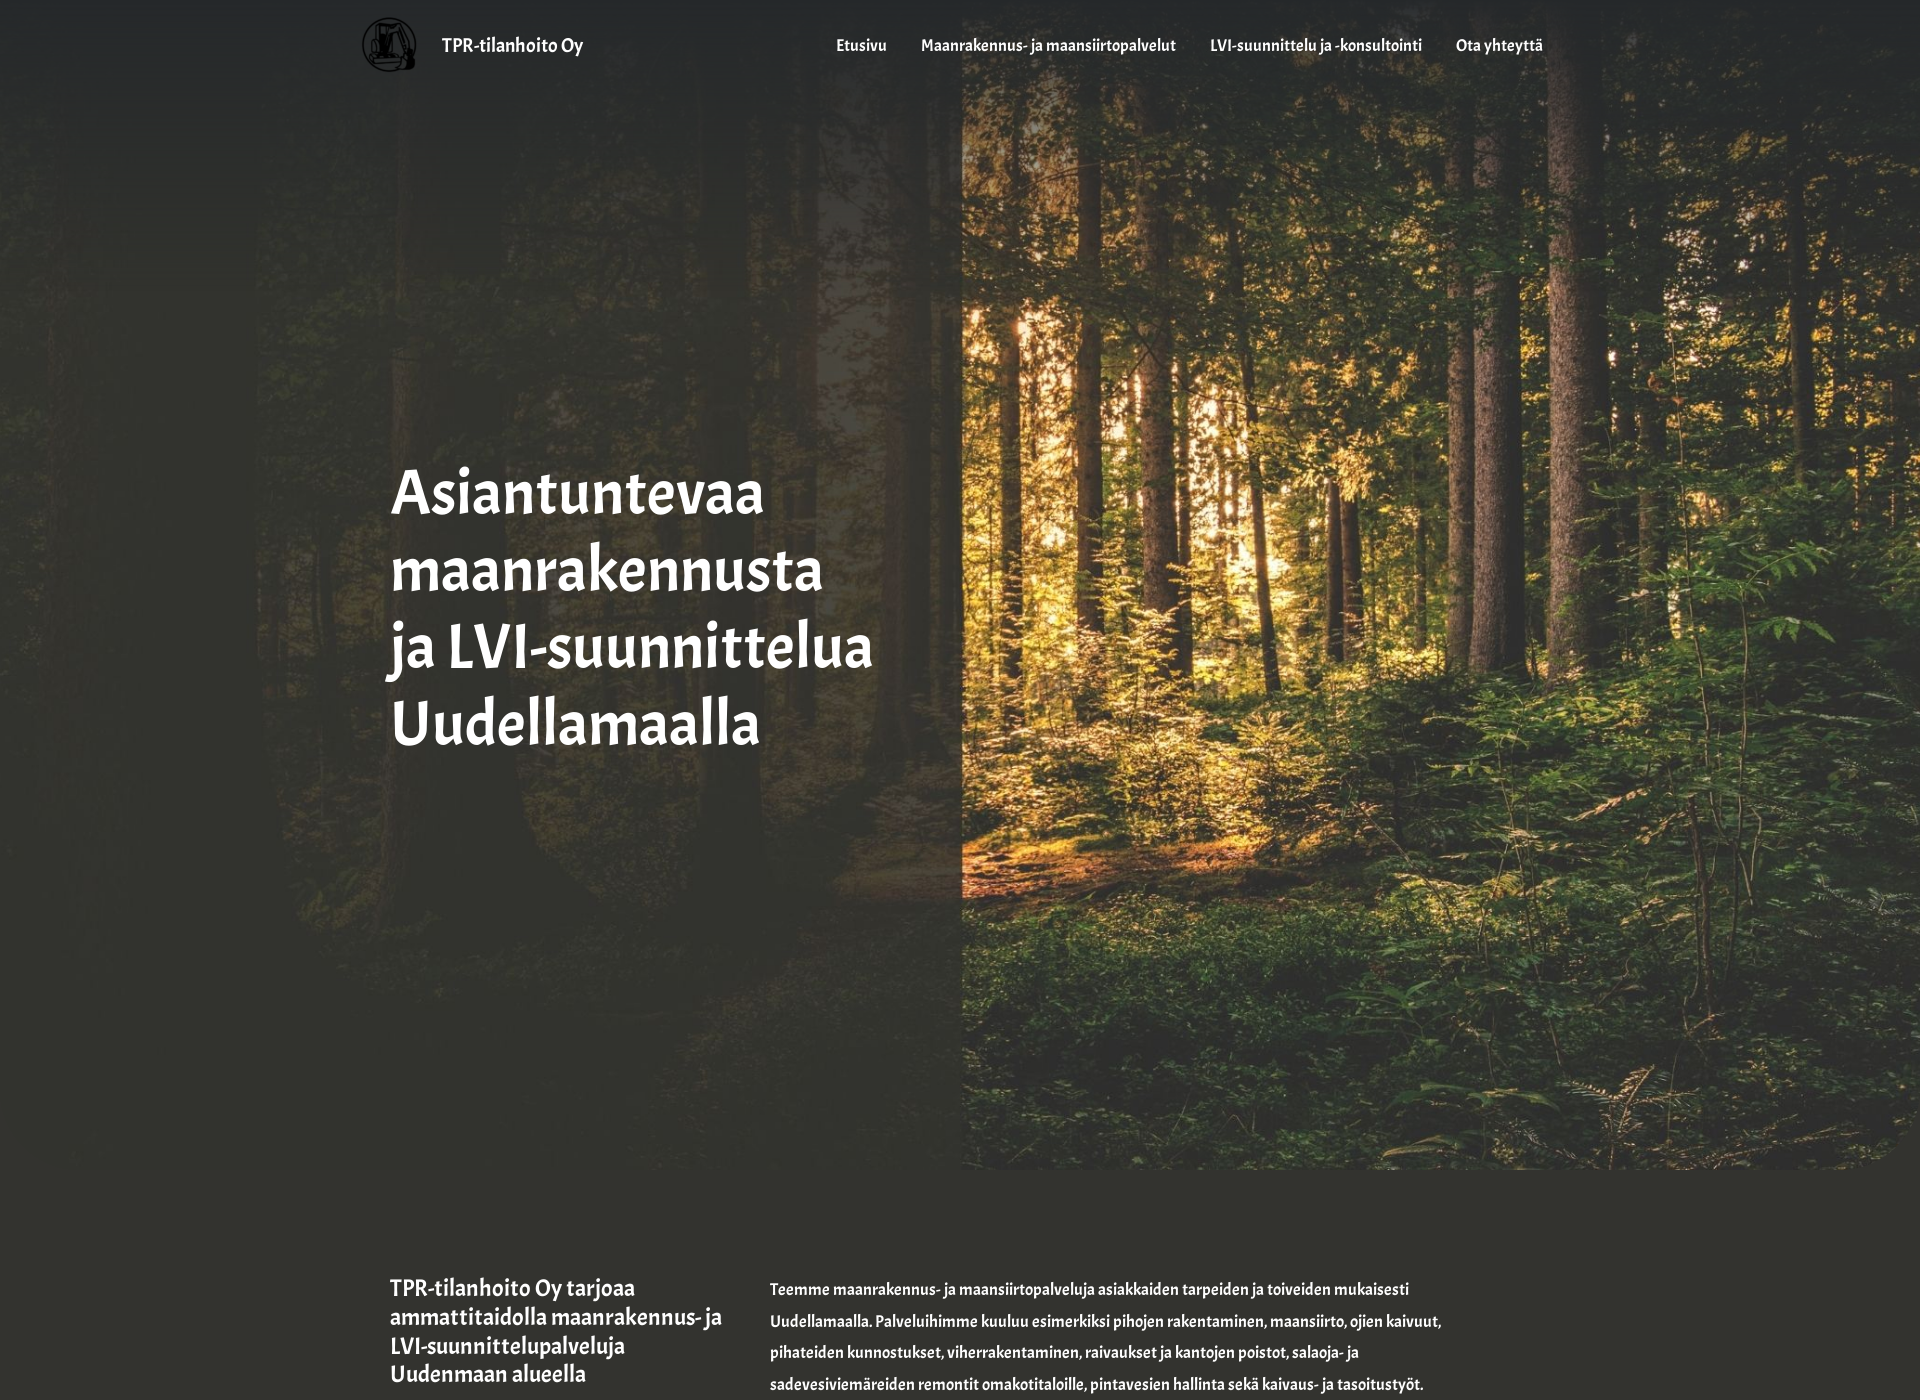 Näyttökuva tpr-tilanhoito.fi